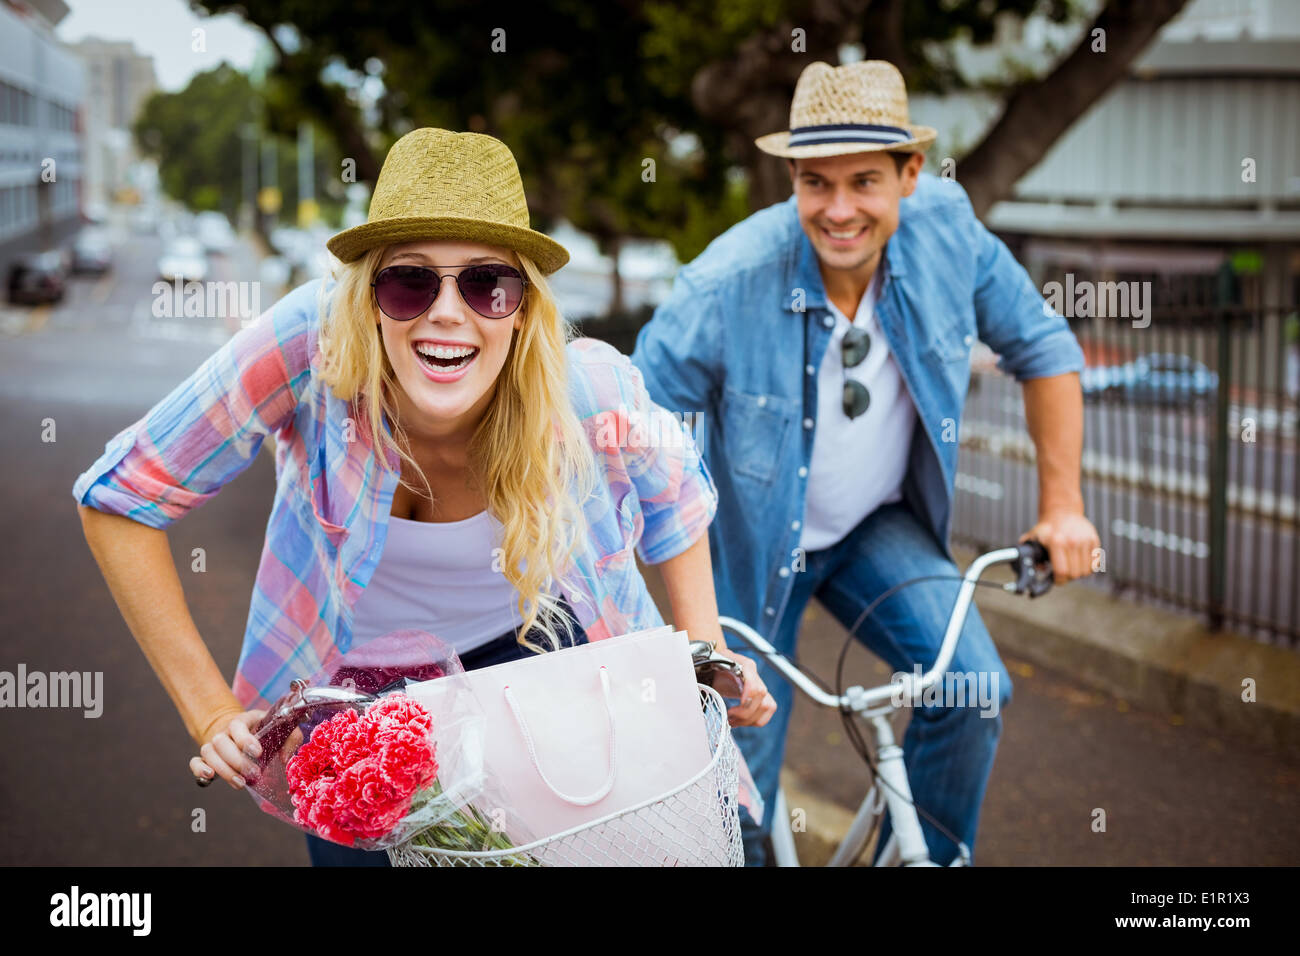 Jeune couple de la hanche aller pour une promenade à vélo Banque D'Images